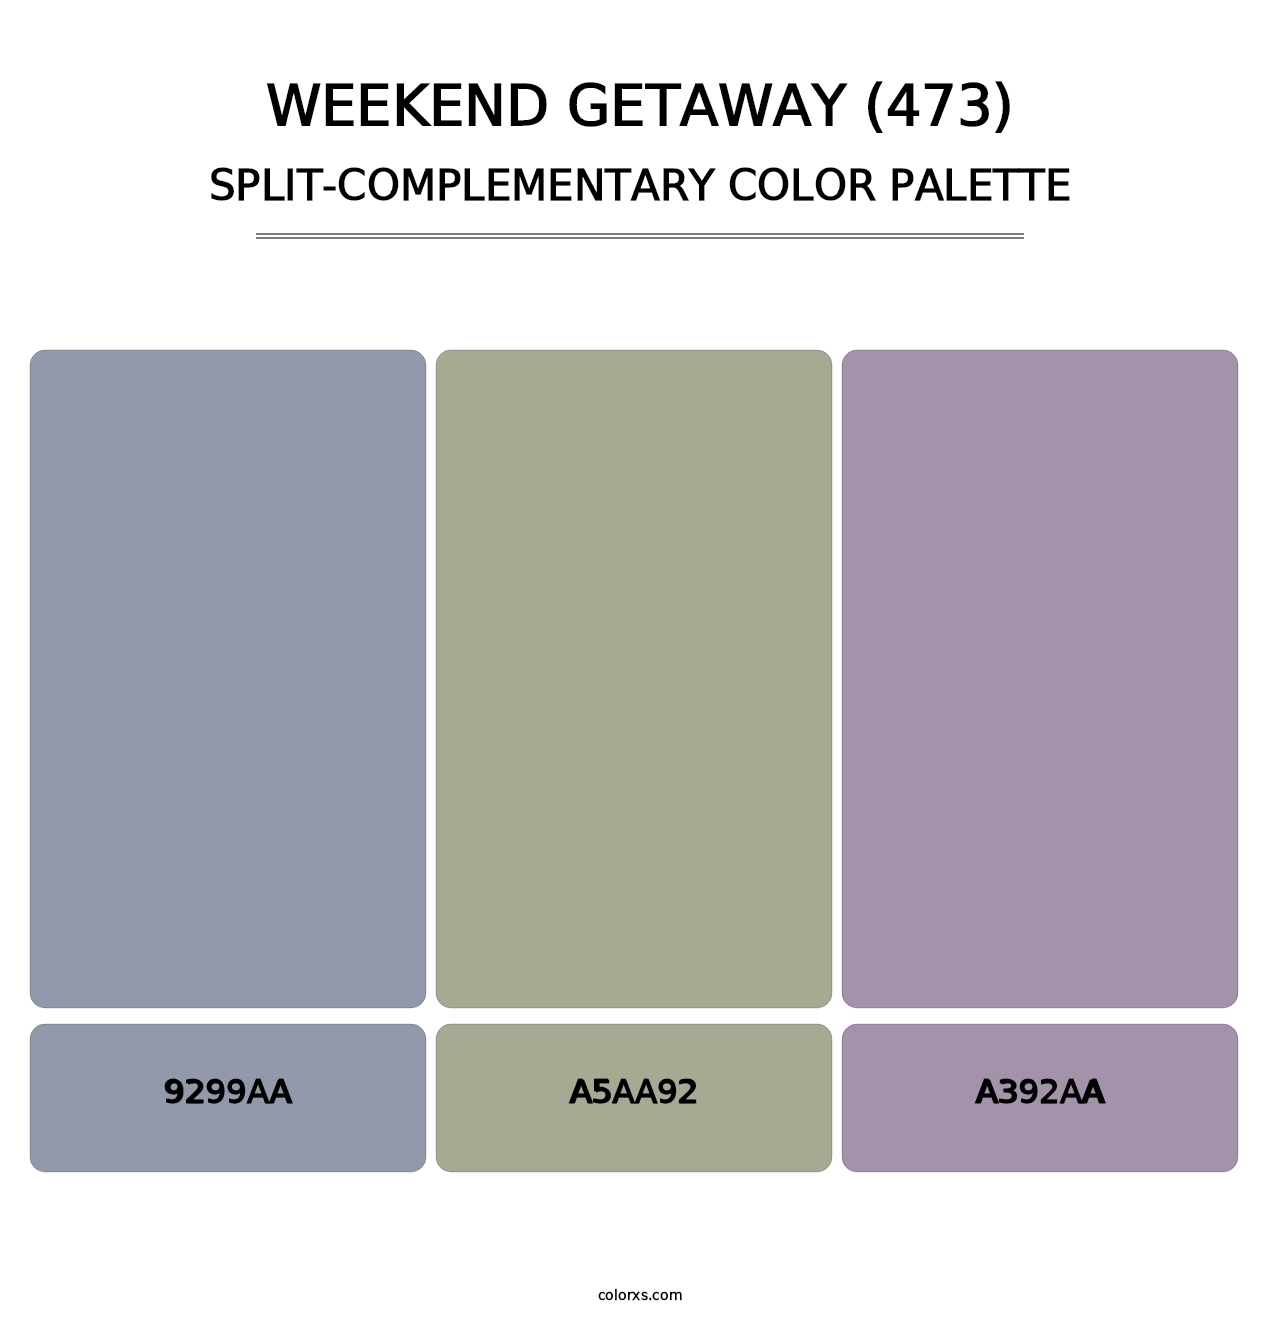 Weekend Getaway (473) - Split-Complementary Color Palette